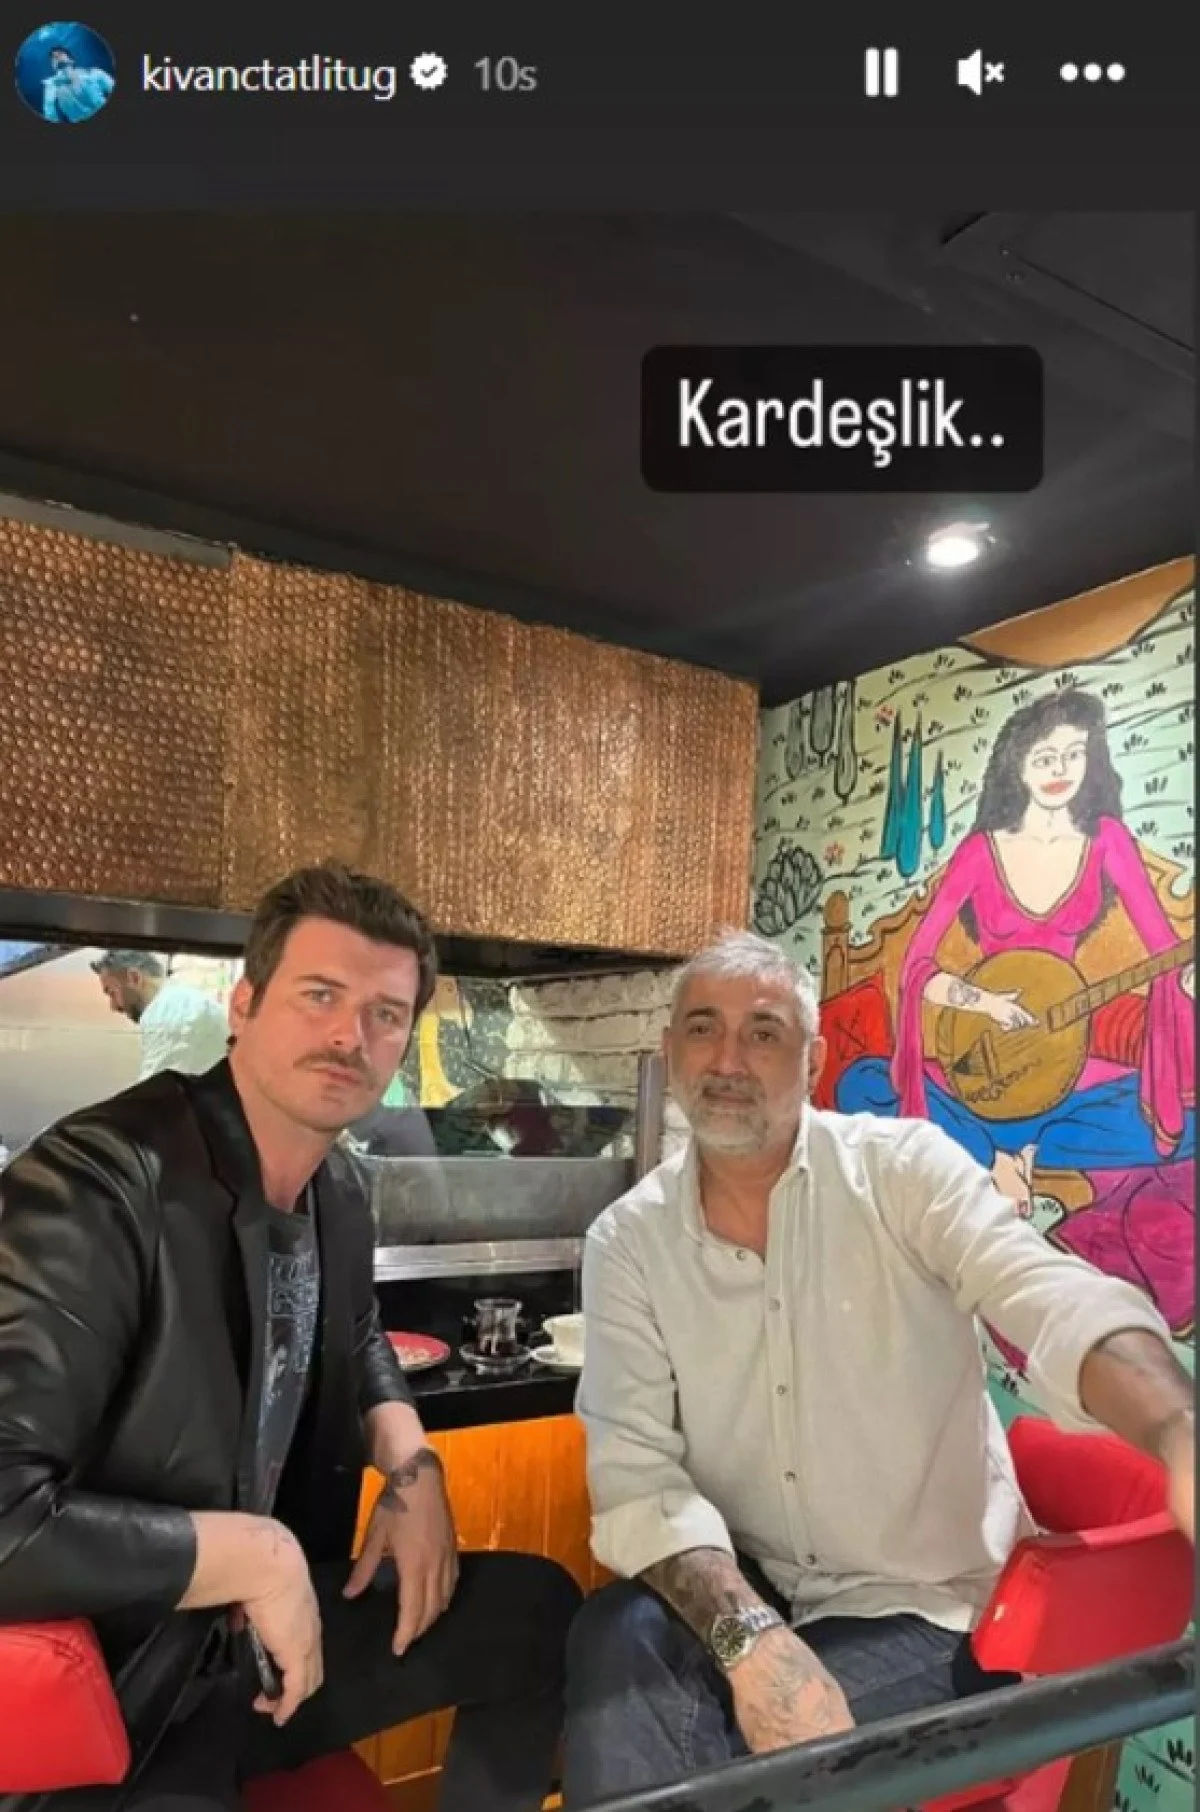 Ünlü oyuncu Kıvanç Tatlıtuğ, abisi Cem Tatlıtuğ ile birlikte çekilmiş bir fotoğrafını Instagram hesabından paylaştı. Bu paylaşım, sosyal medyada büyük yankı uyandırdı.